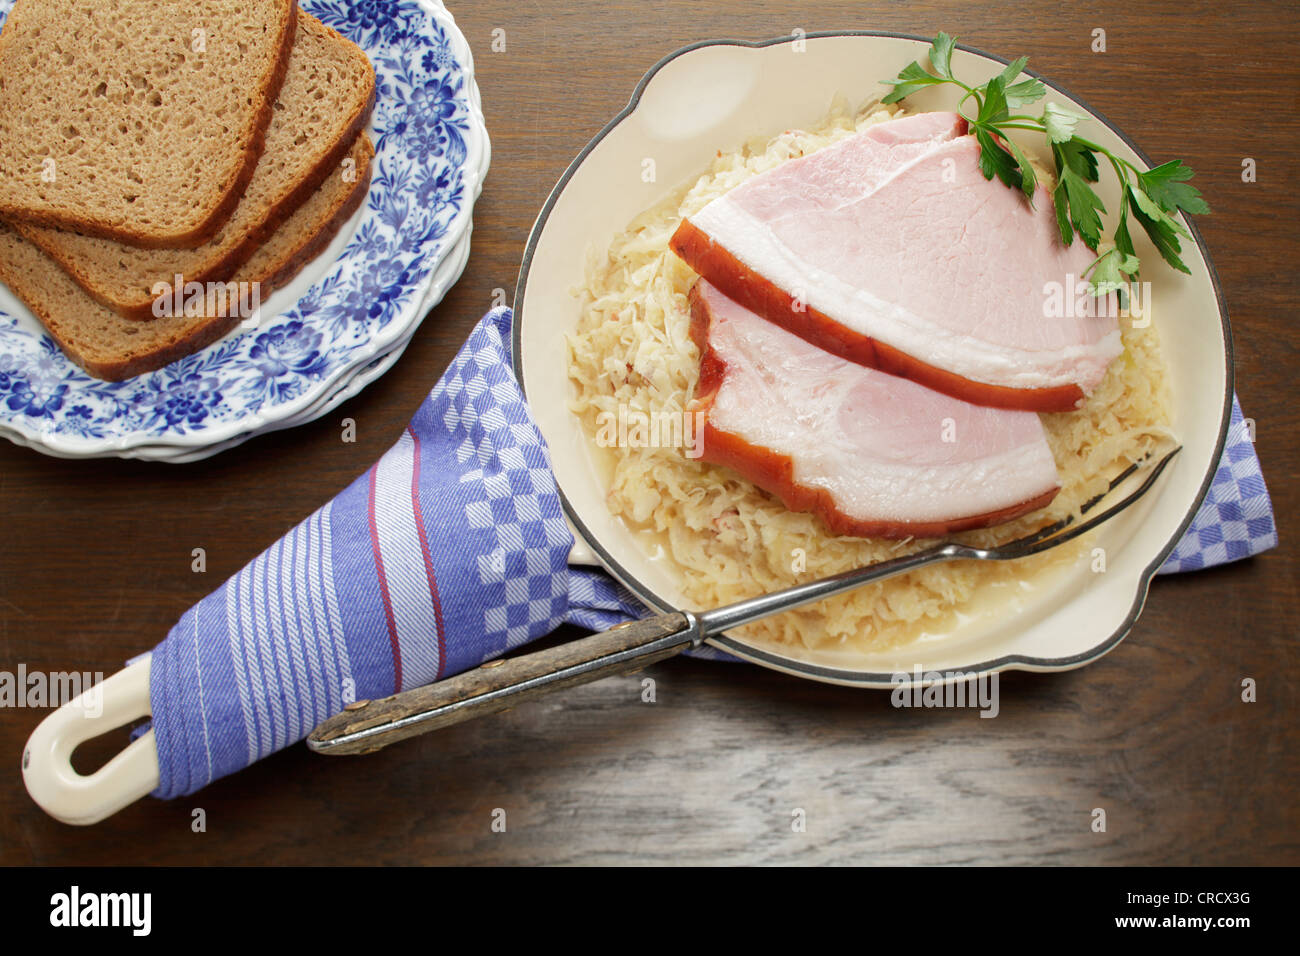 Rôti de porc avec grésillement servi dans une poêle sur la choucroute, les tranches de pain de seigle Banque D'Images